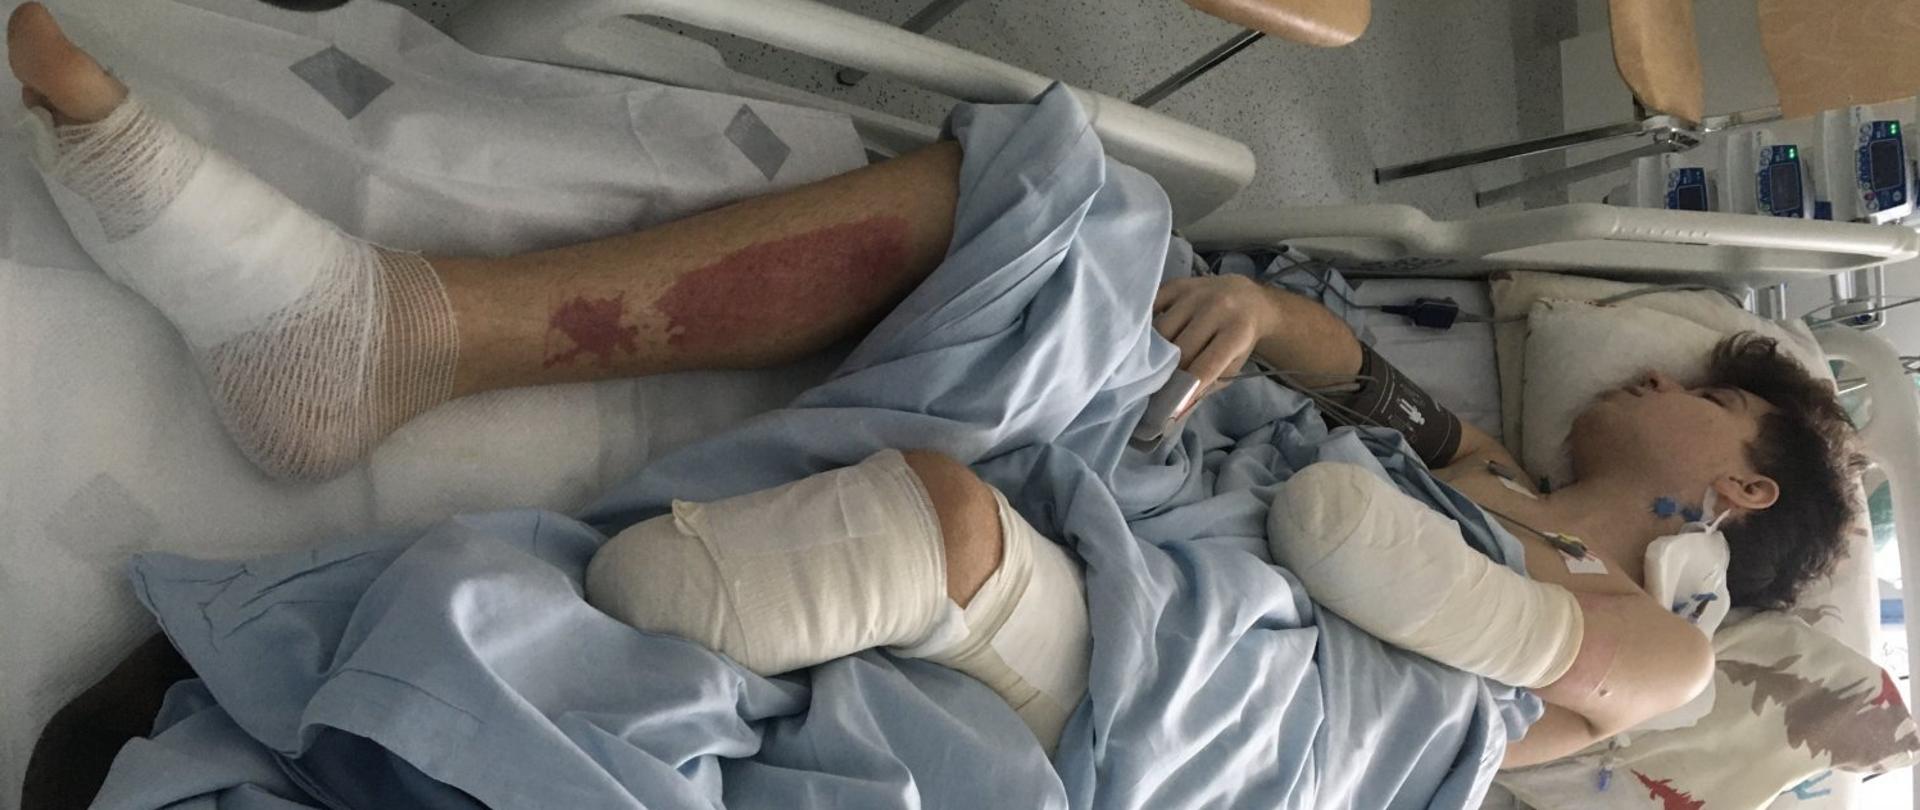 Zdjęcie przedstawia chłopca śpiącego na szpitalnym łóżku z amputowaną częścią lewej nogi i przedramienia oraz widocznymi poparzeniami na prawej nodze. 